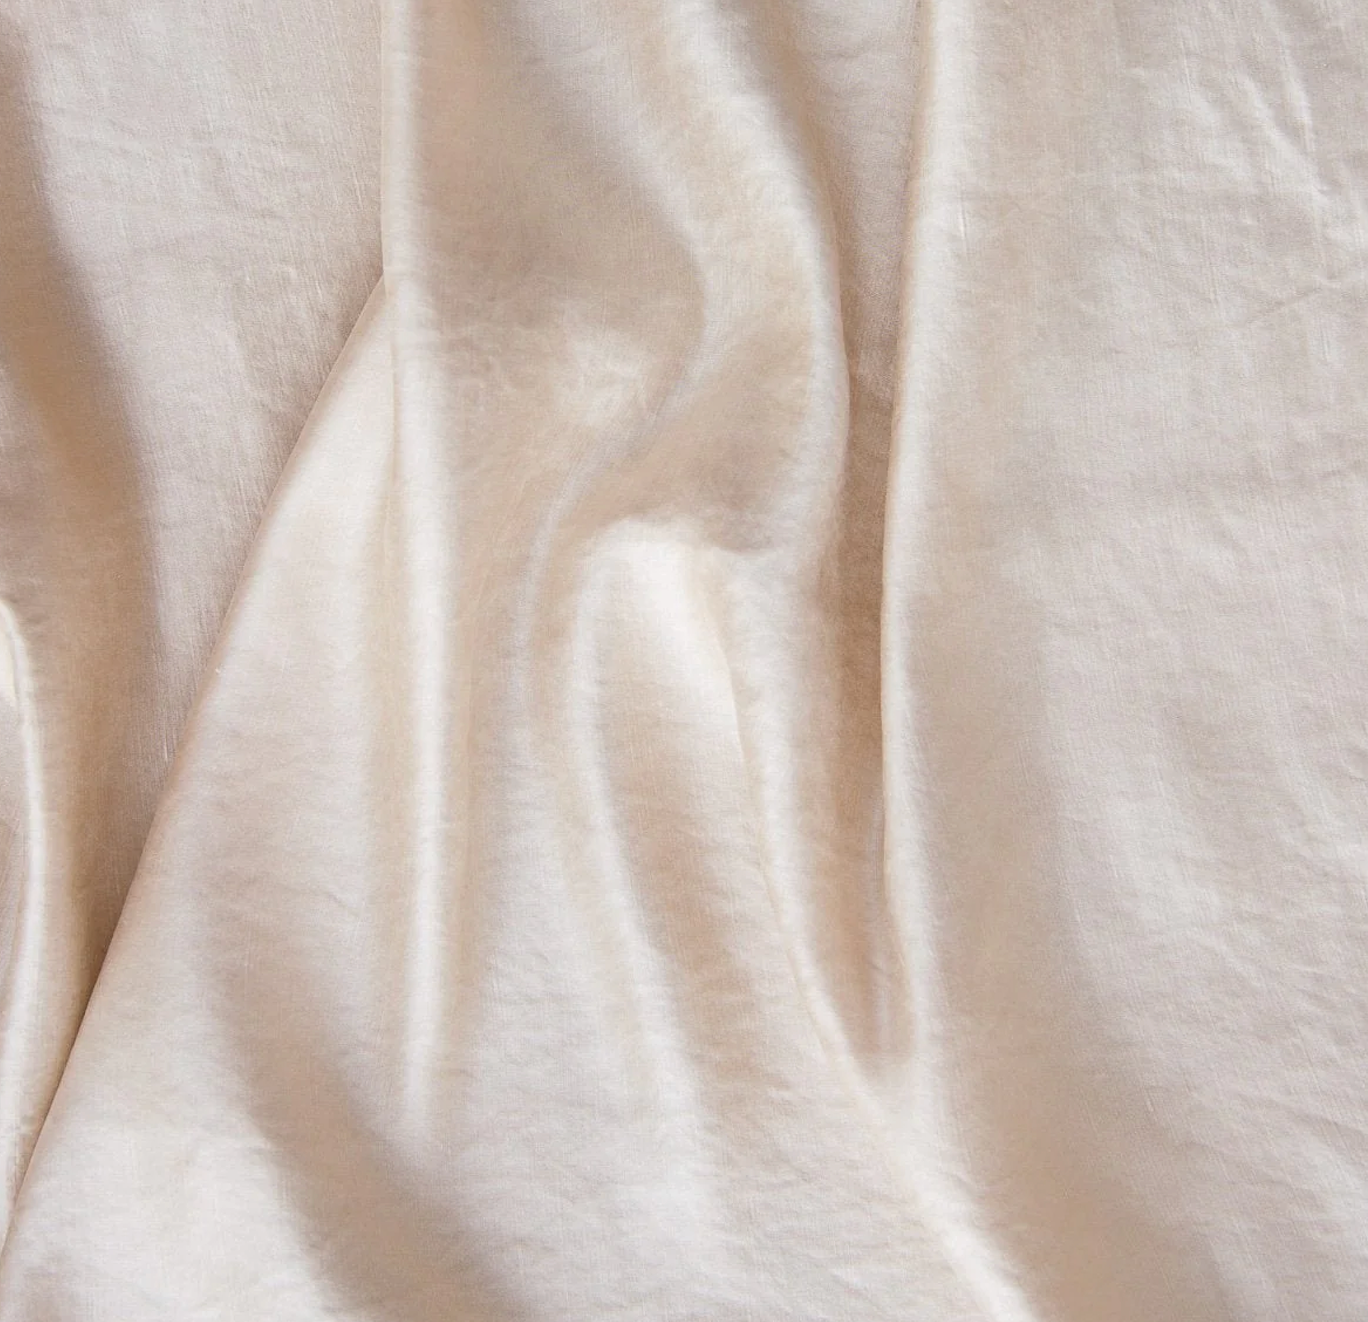 Taline Pearl silk & linen pillow by Bella Notte